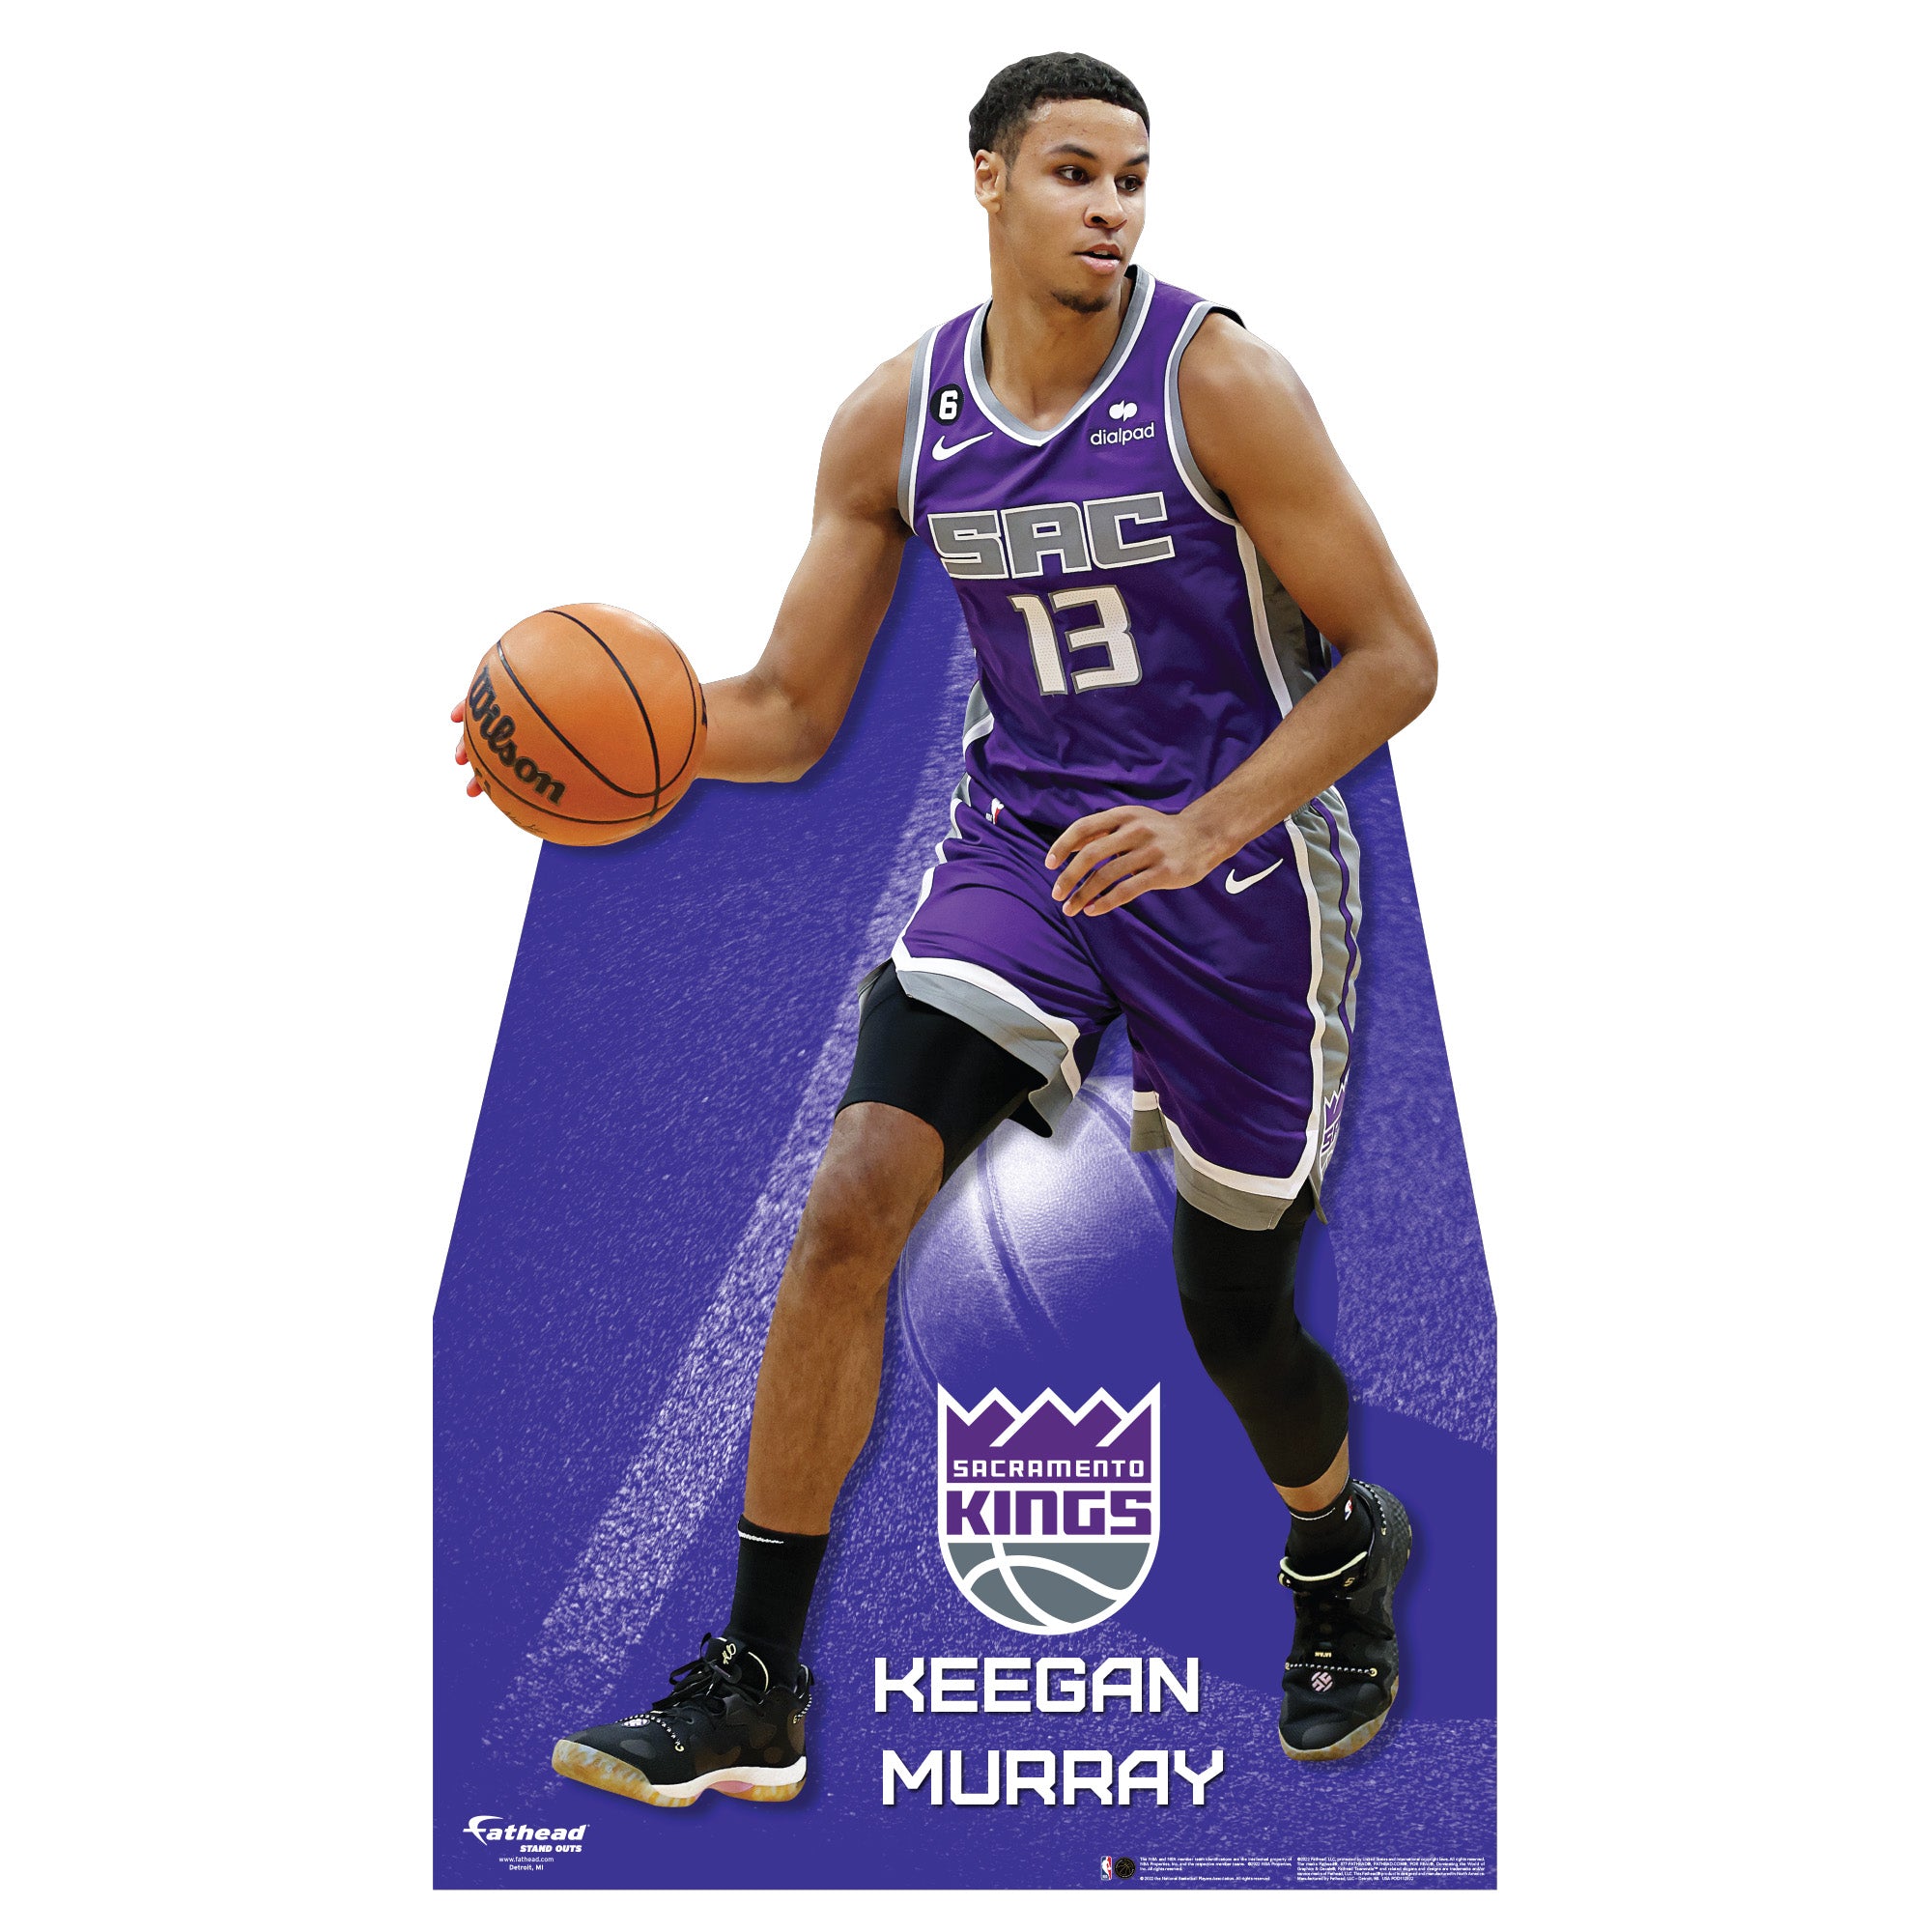 Sacramento Kings select Keegan Murray with 4th pick